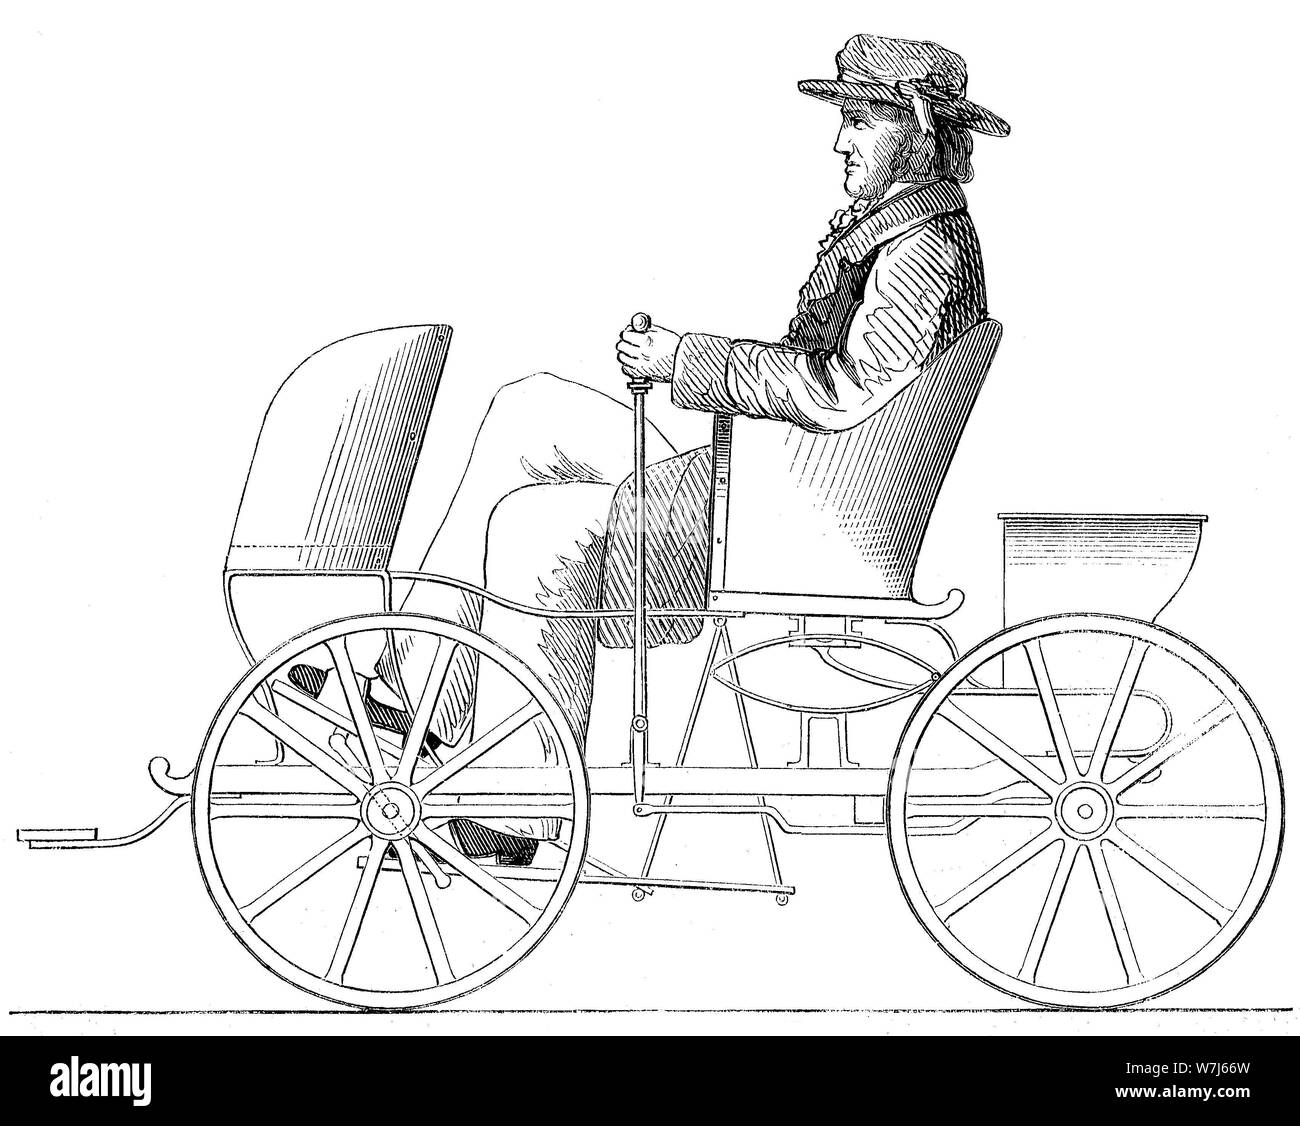 Alchimiste, la conduite de la machine ou machine de course, un véhicule alimenté à l'homme, 1880, gravure sur bois, Angleterre historique Banque D'Images